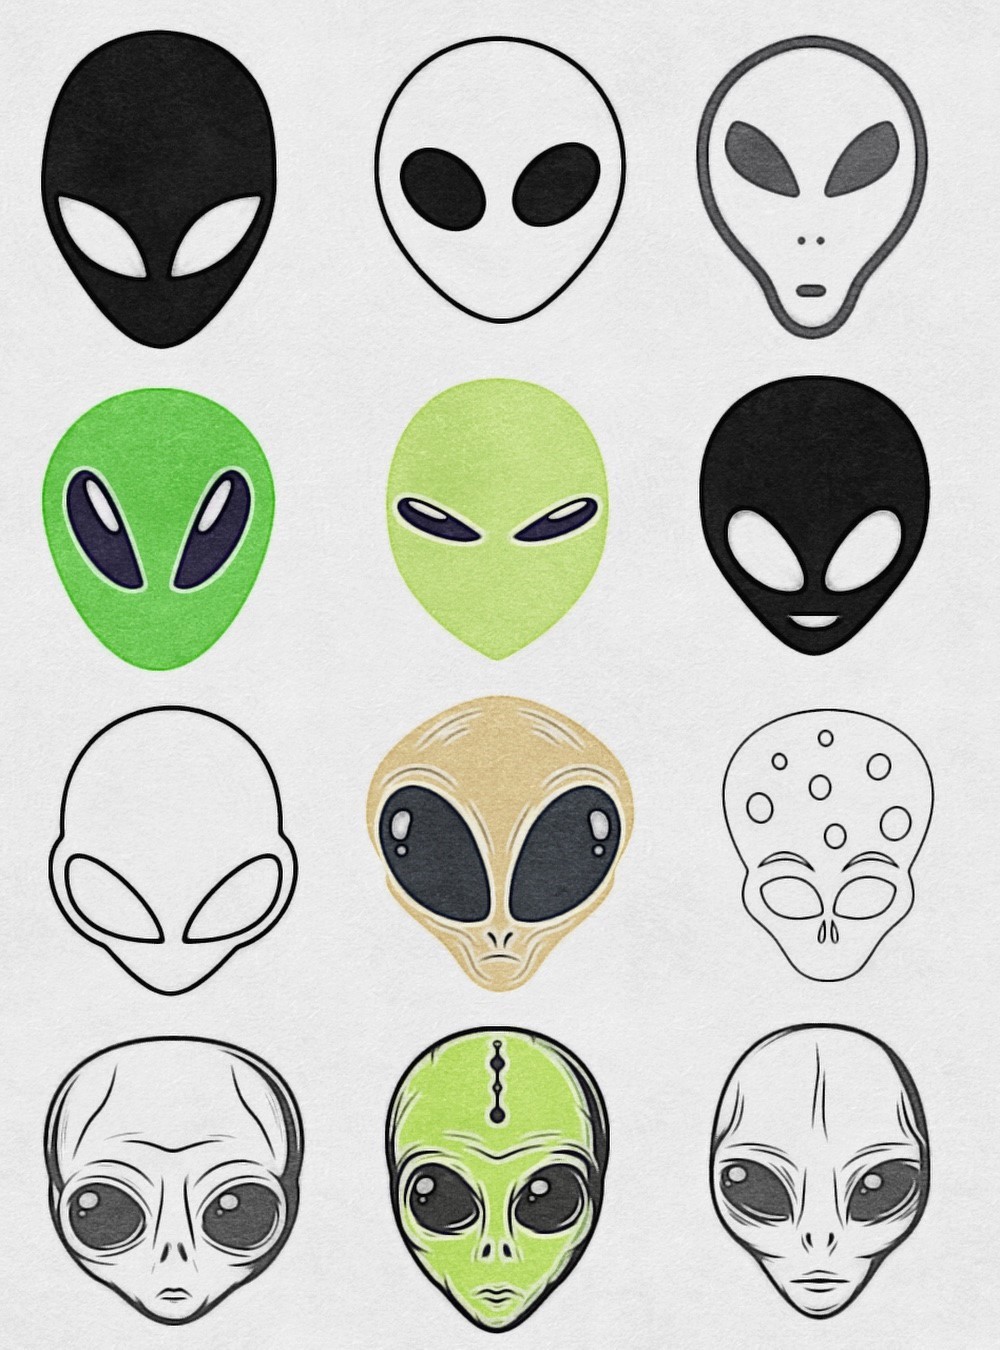 How To Draw An Alien Face: 12 Alien Head Drawing Ideas